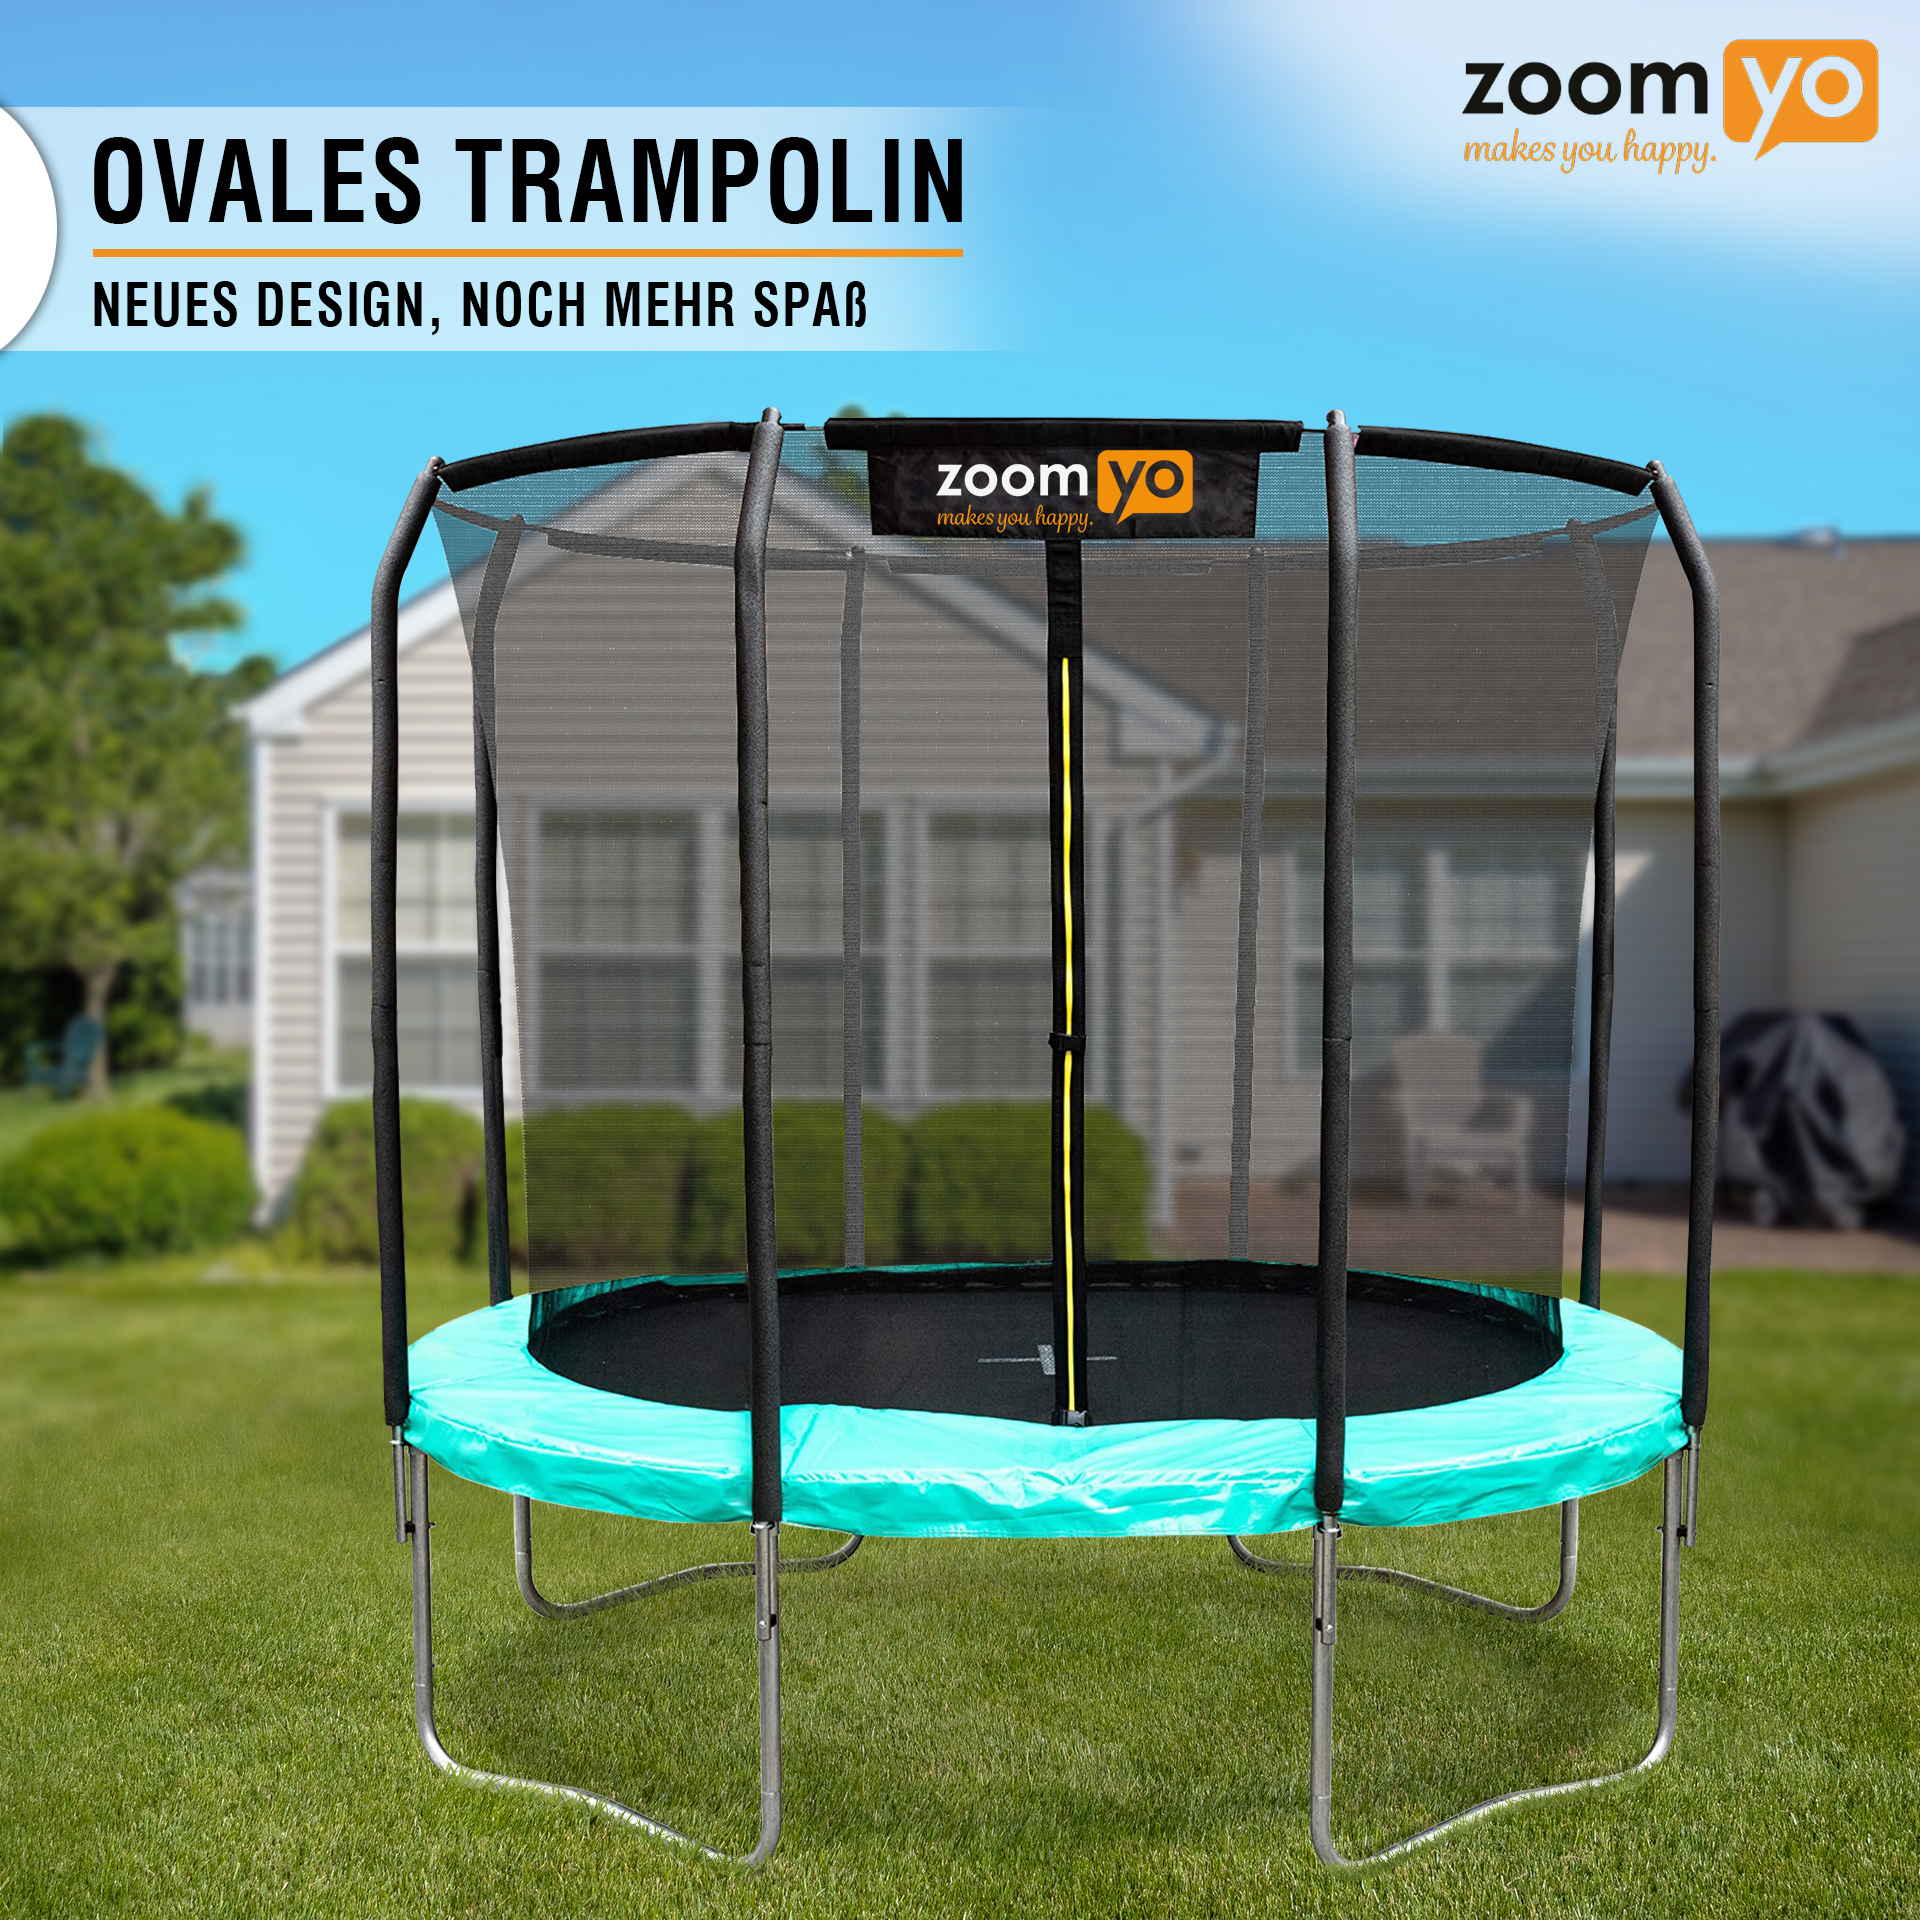 ZOOMYO Trampolin,oval,Leiter separat erhältlich,für Trampolin, Sprungtechniken komplexe schwarz-Grün